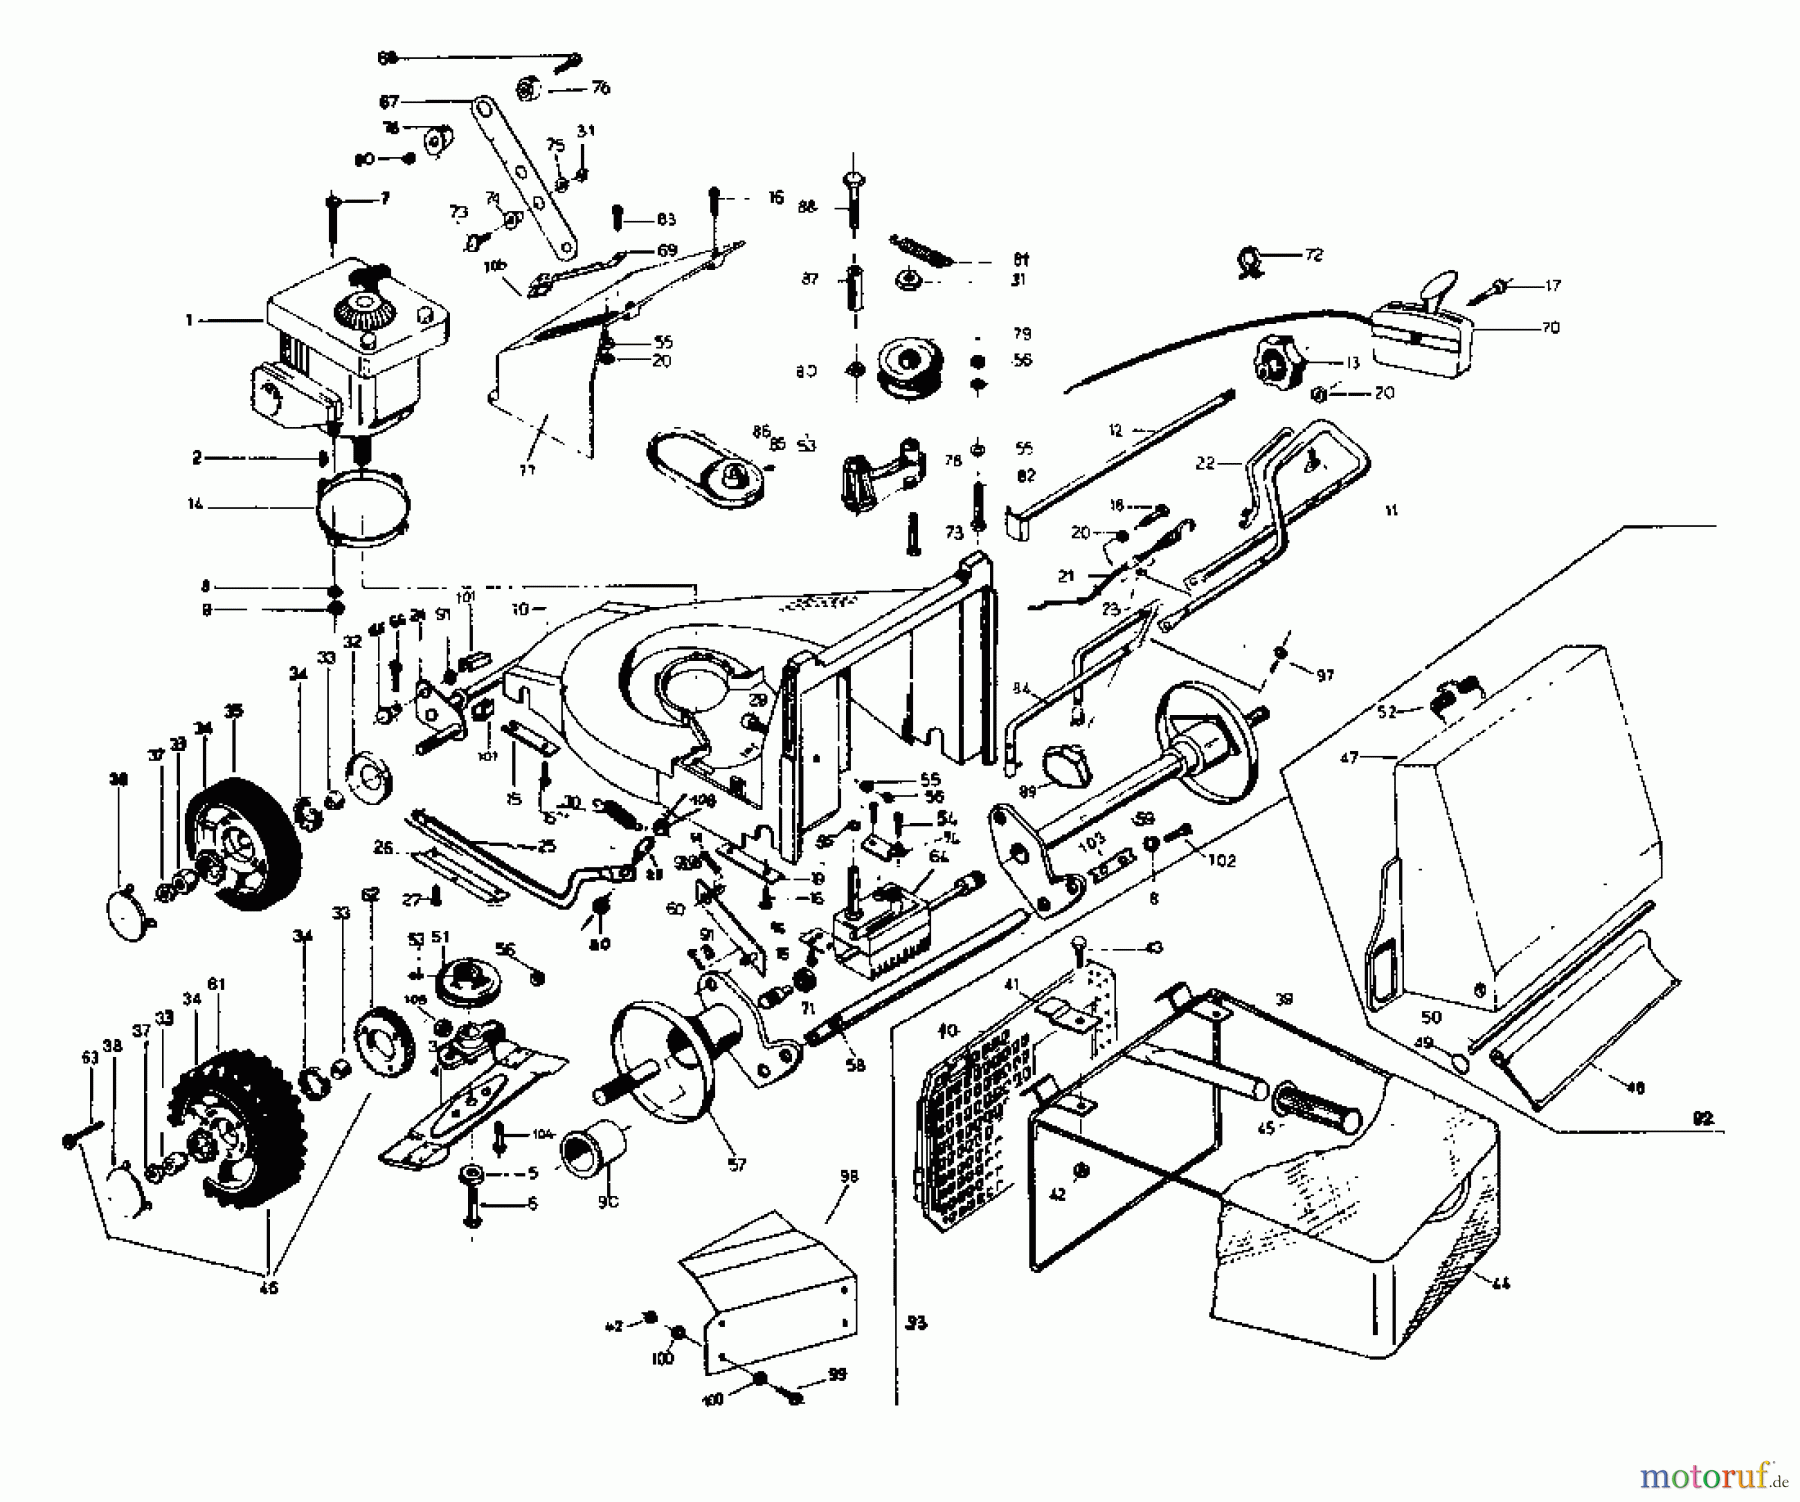  Rotaro Petrol mower self propelled ROTARO  48 S 181-0157  (1991) Basic machine